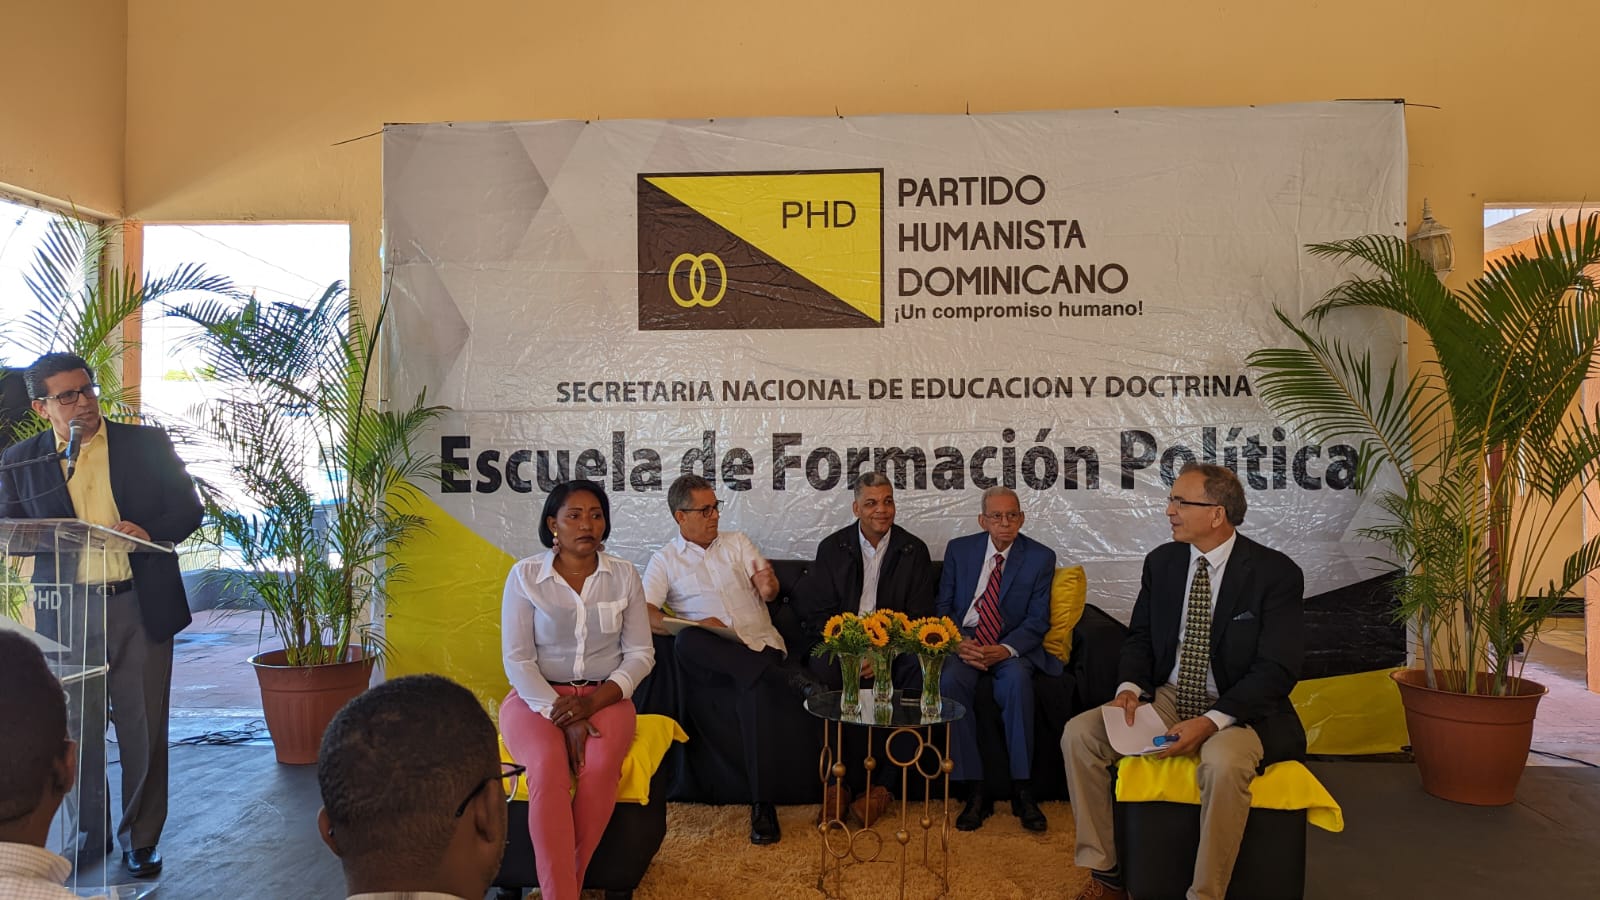 (foto) El presidente del PHD, Ramón Emilio Goris, junto a otros directivos de la organizacion en el acto inaugural de la Escuela de Formación Política en Bani.